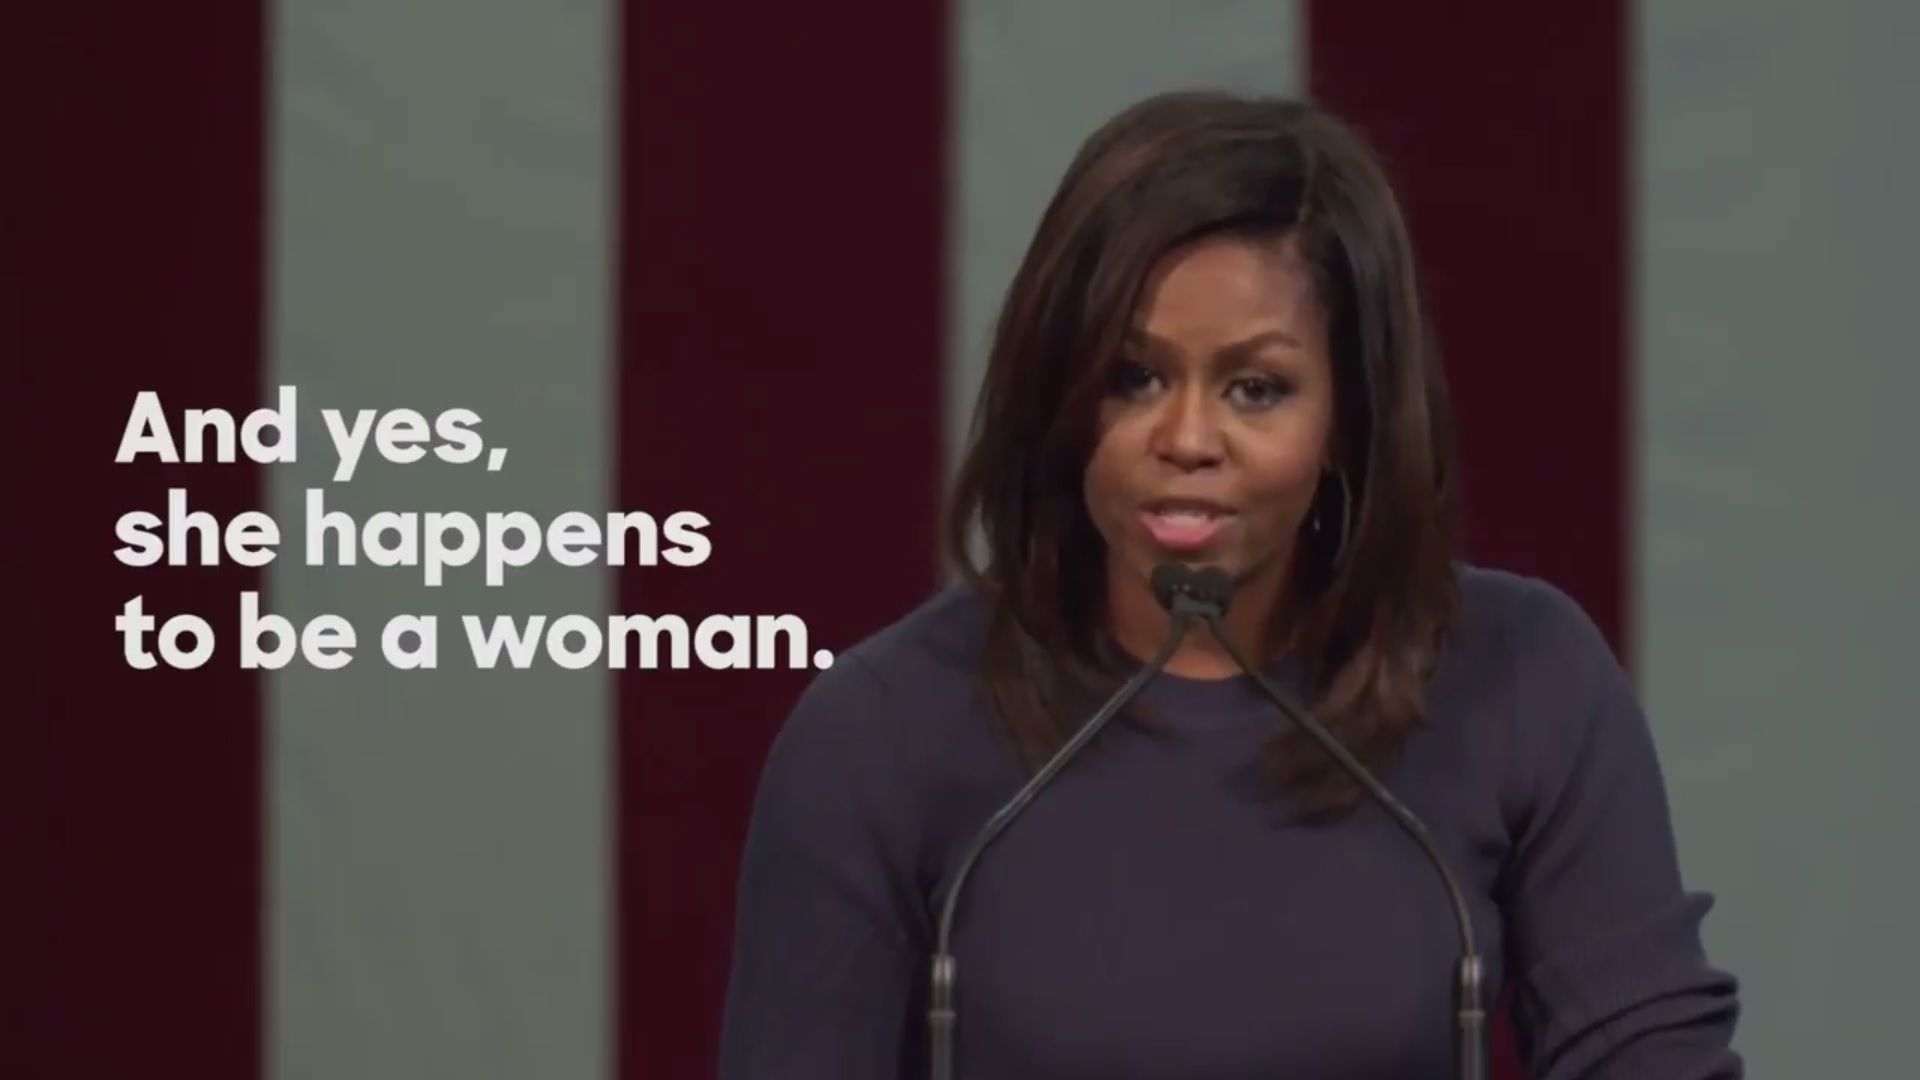 Vídeo: El sorprenent discurs de Michelle Obama contra Donald Trump